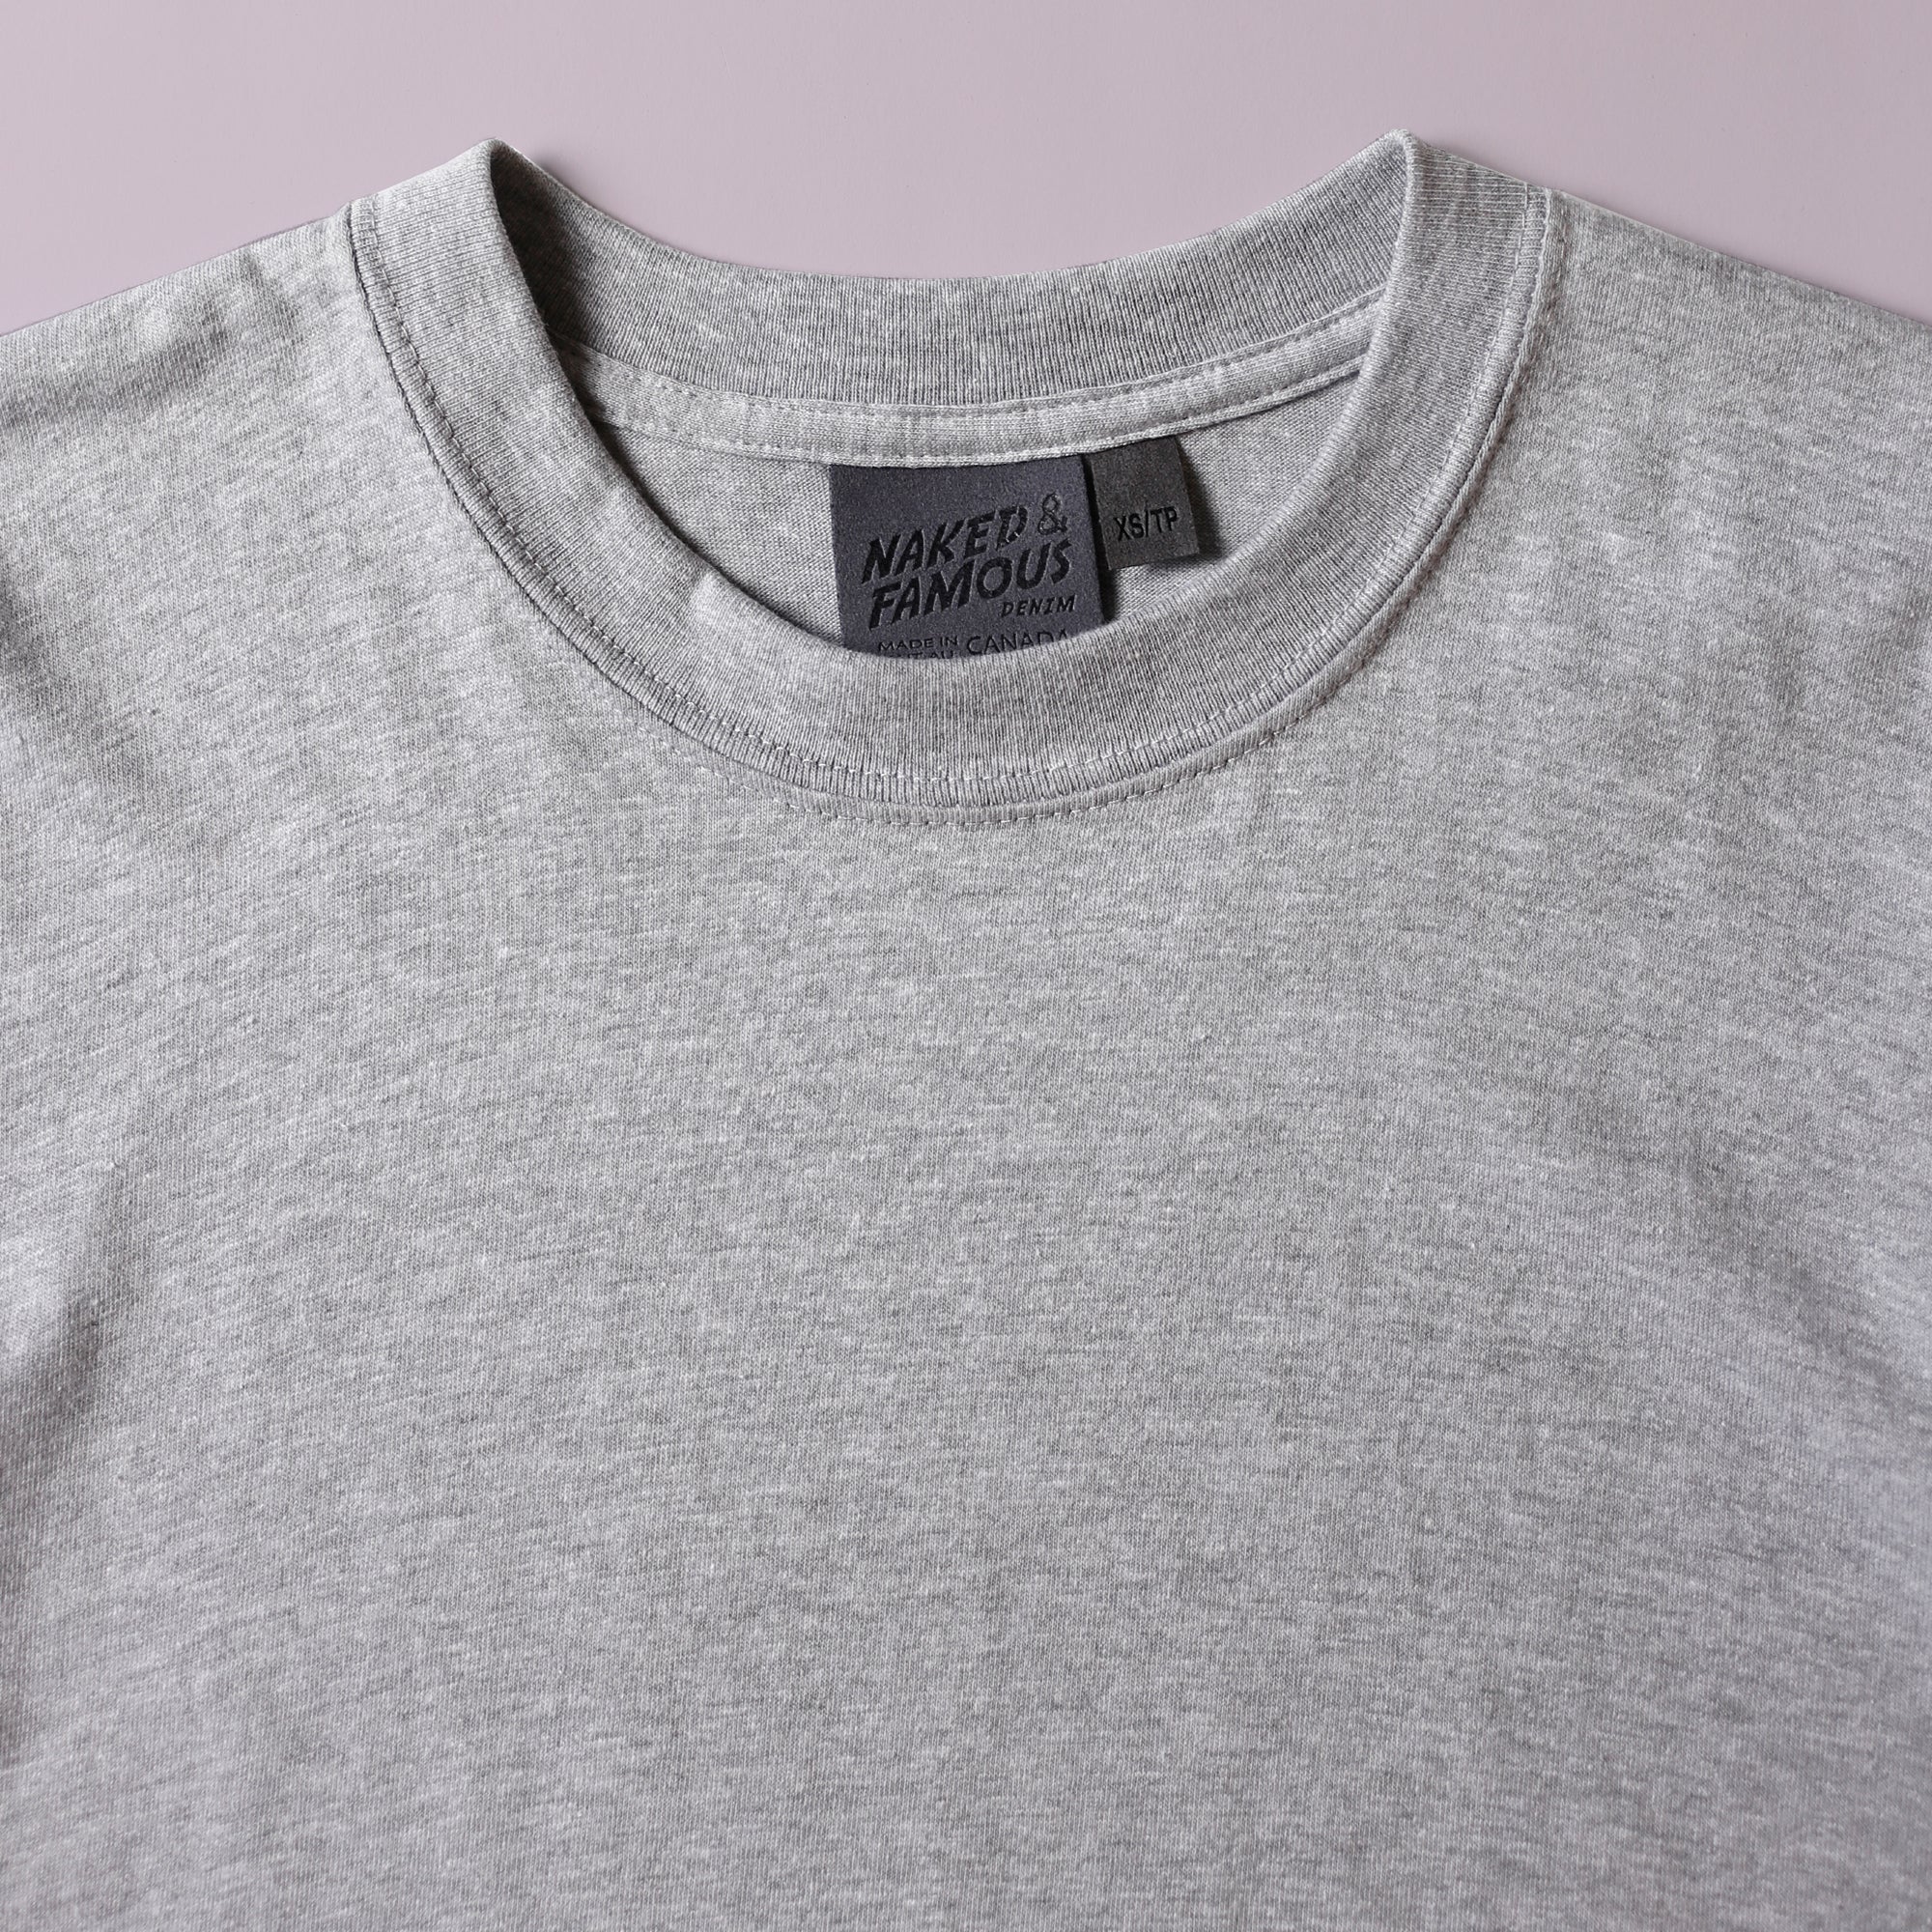 T-Shirt - Heather Grey Circular Knit